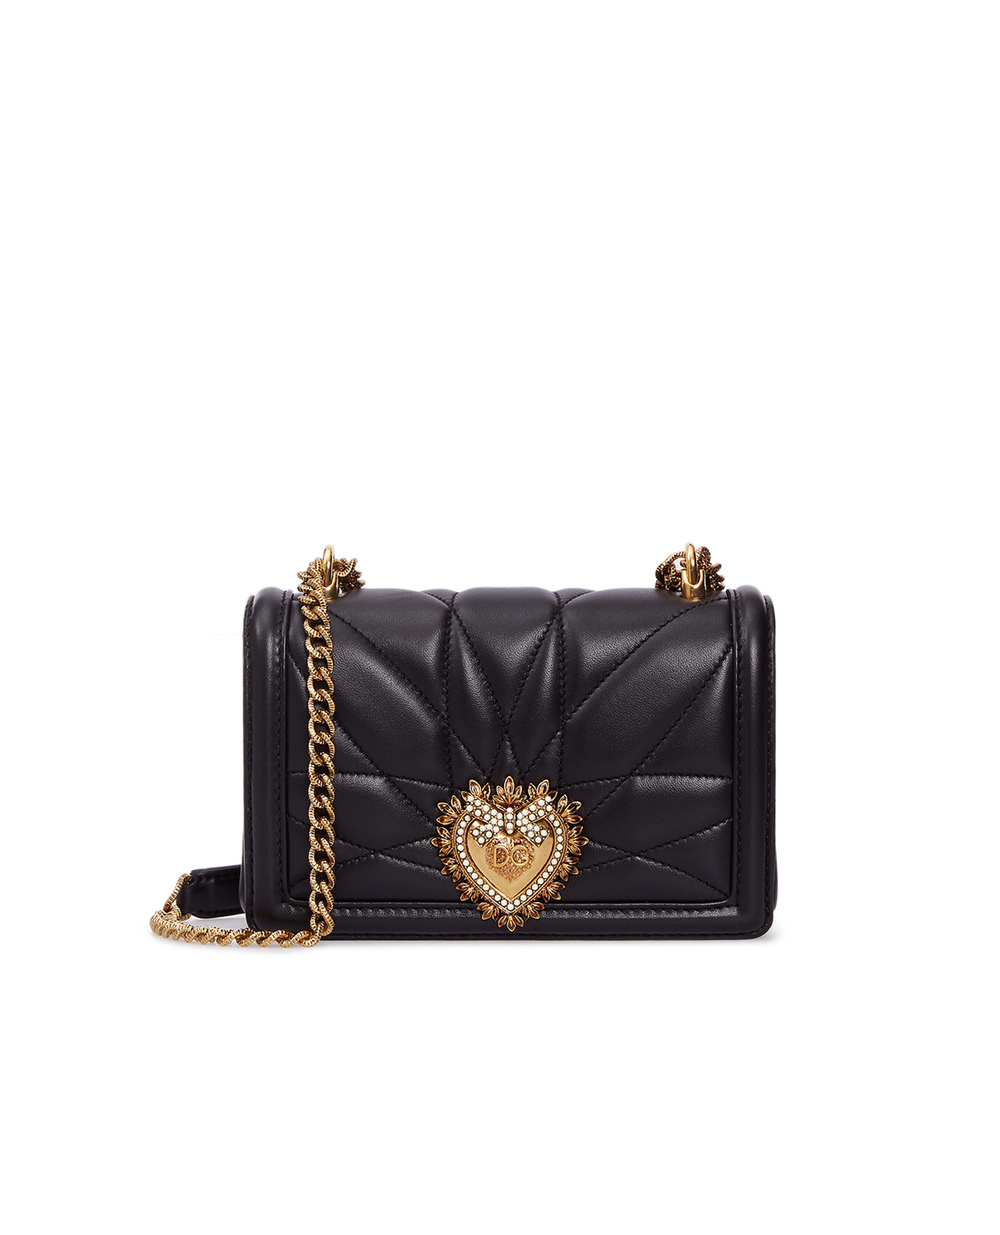 Кожаная сумка Devotion mini Dolce&Gabbana BB6880-AV967, черный цвет • Купить в интернет-магазине Kameron